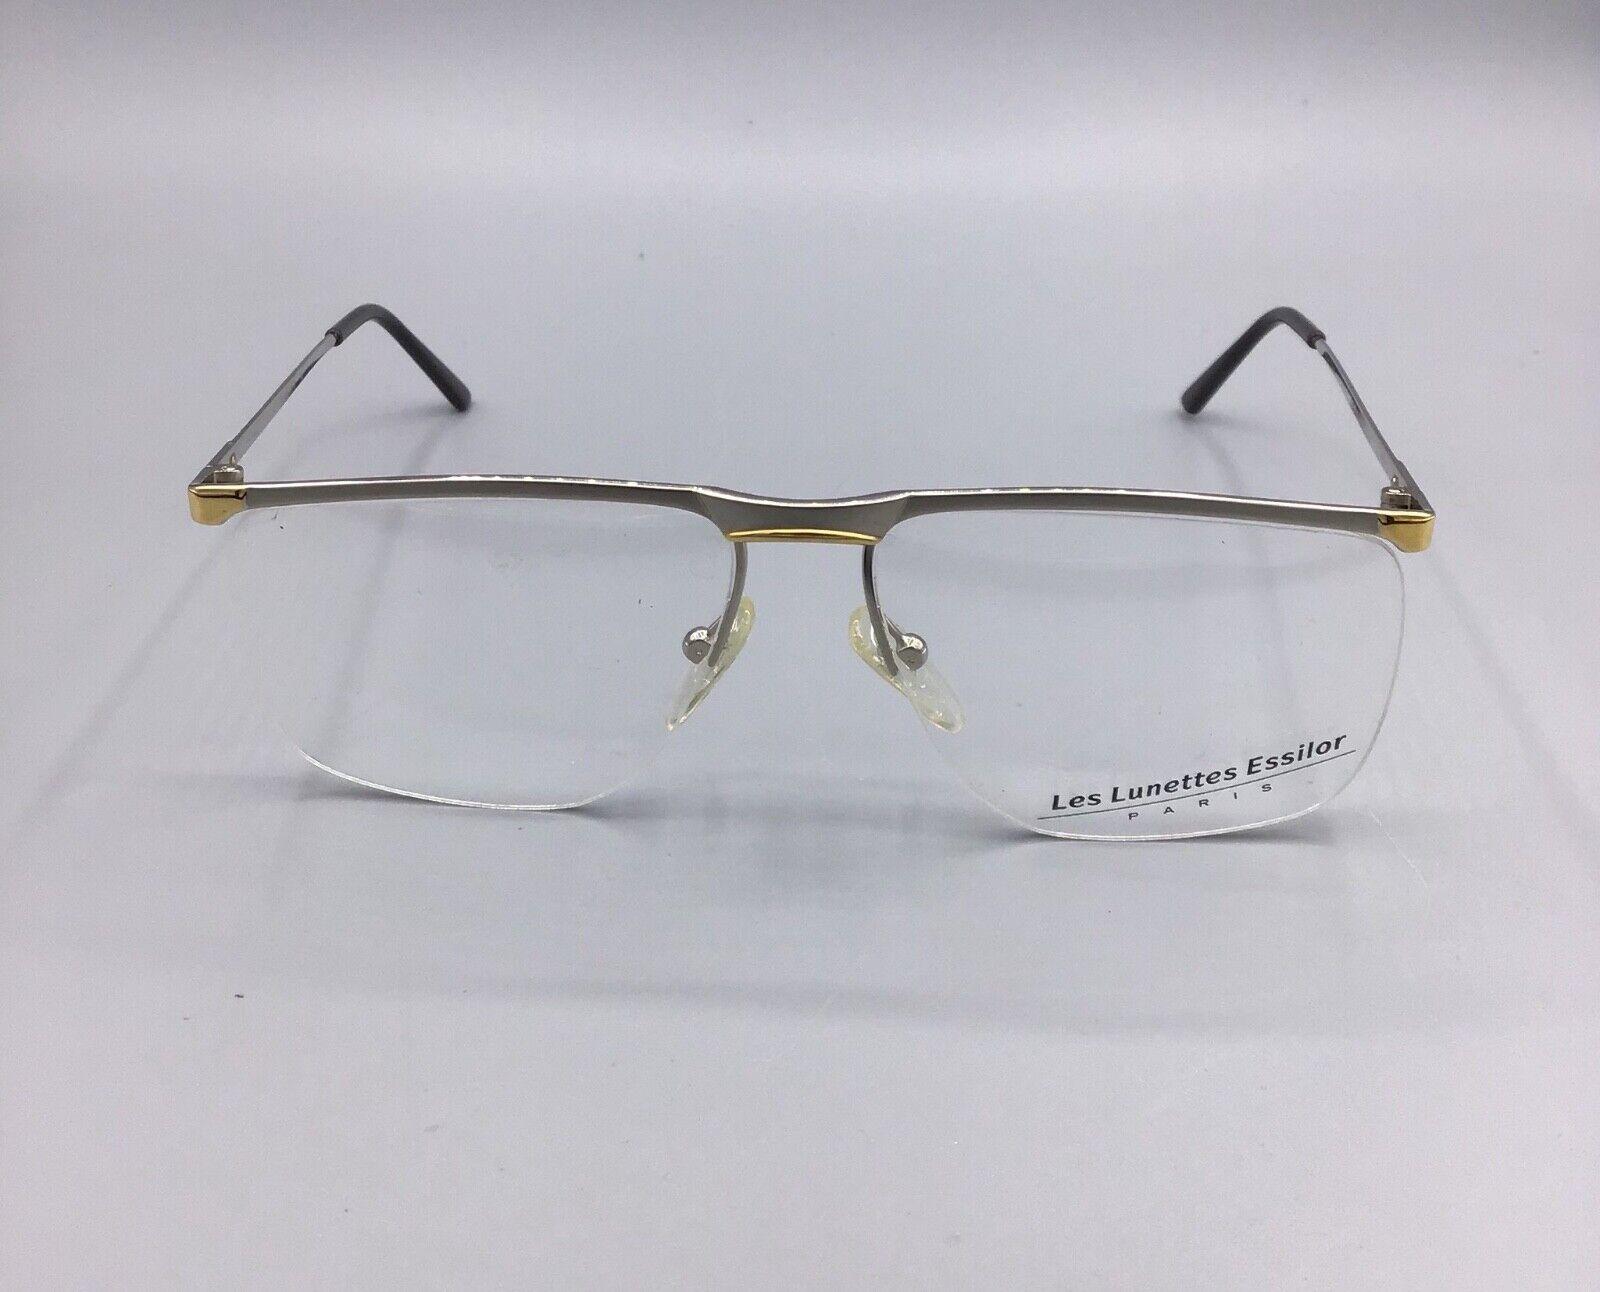 Les Lunettes Paris Essilor occhiale vintage Eyewear 136 15 model frame France